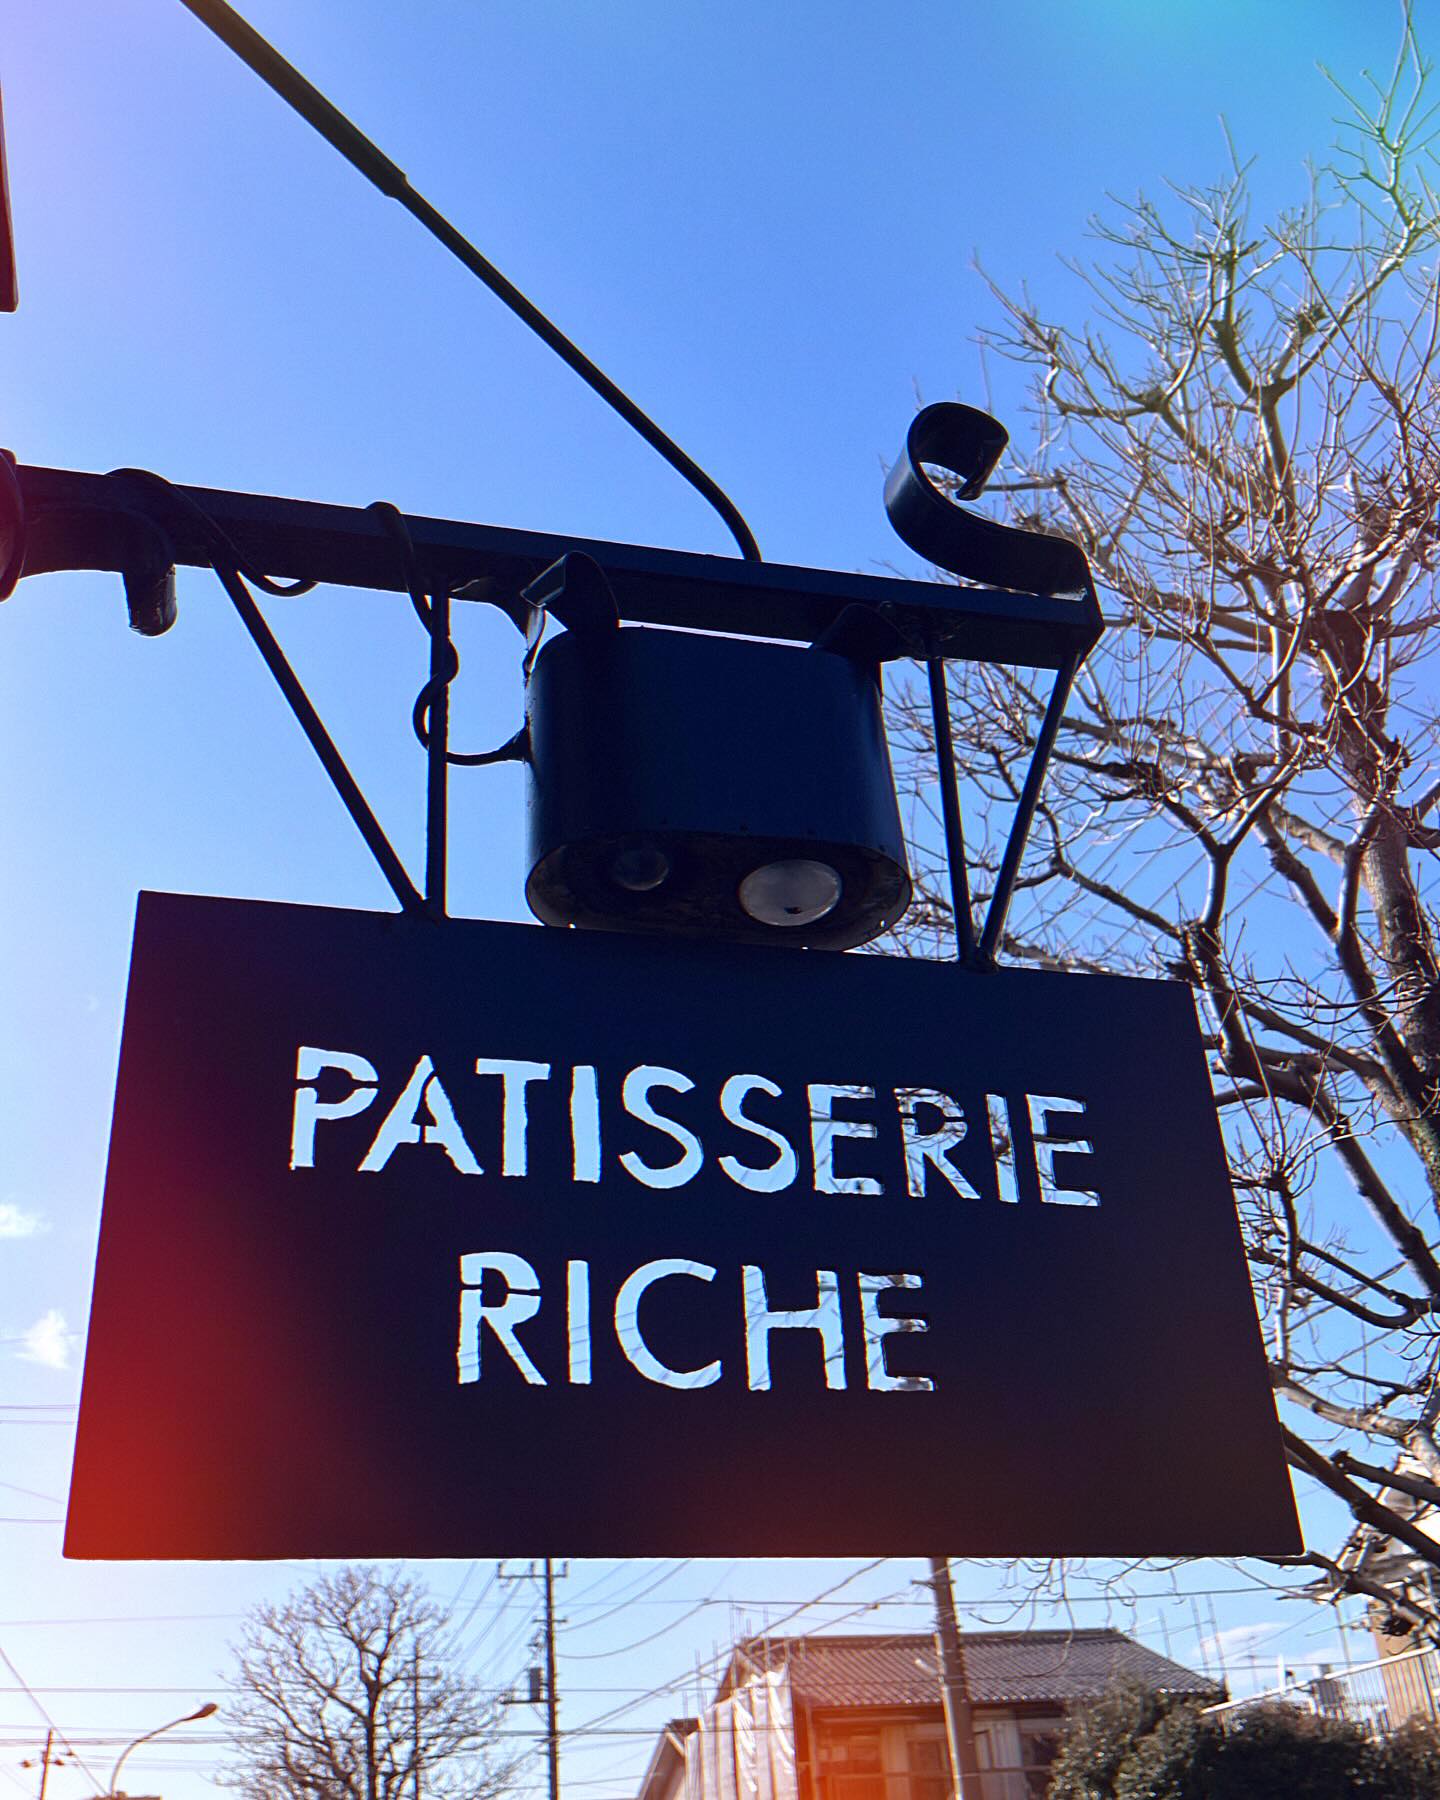 from Patisserie Riche (パティスリー•リッシュ)

Café de Riche (カフェ•ド•リッチ)に併設のスイーツショップPatisserie Riche (パティスリー•リッシュ)も独自のアカウントで皆様への情報発信を始めました❣
これからもひとつひとつのスイーツを丁寧に作り皆様にお届けしたいと思います。
新たな取り組みのアイデアも盛りだくさん用意していますので、ぜひ楽しみにして下さい
こじんまりですが、温かい居心地の良い雰囲気作りを心掛け、皆様を店舗にてお待ちしております
#熊谷カフェ•ド•リッチ